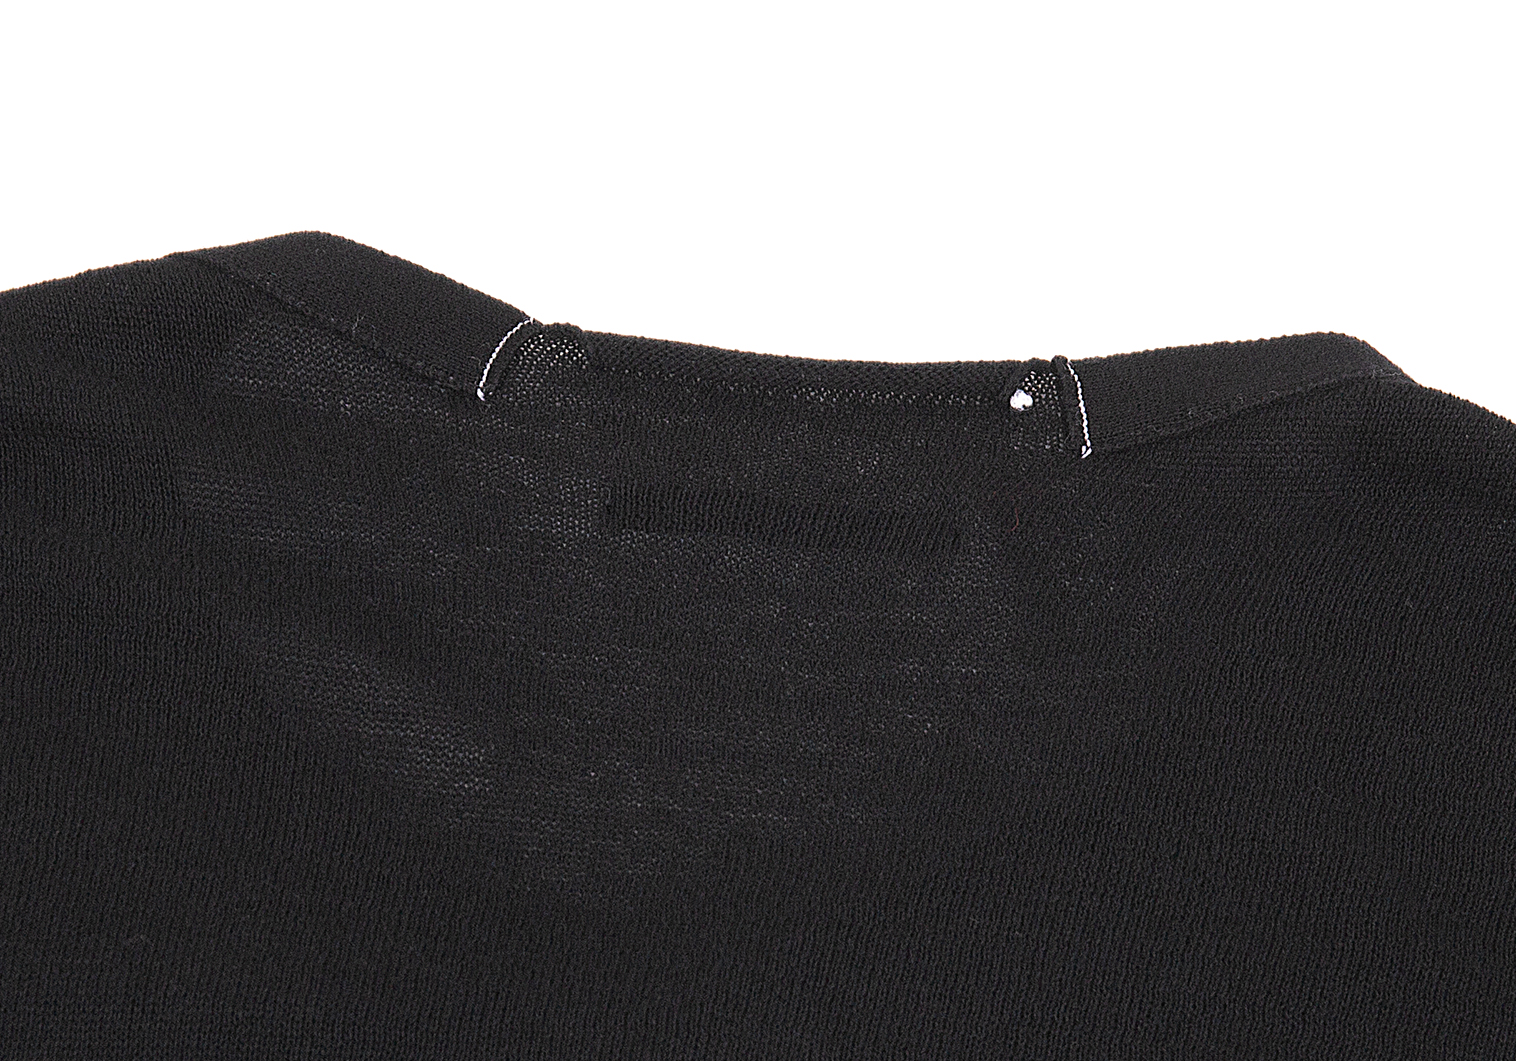 ワイズY's ニット半袖ワンピース 黒2